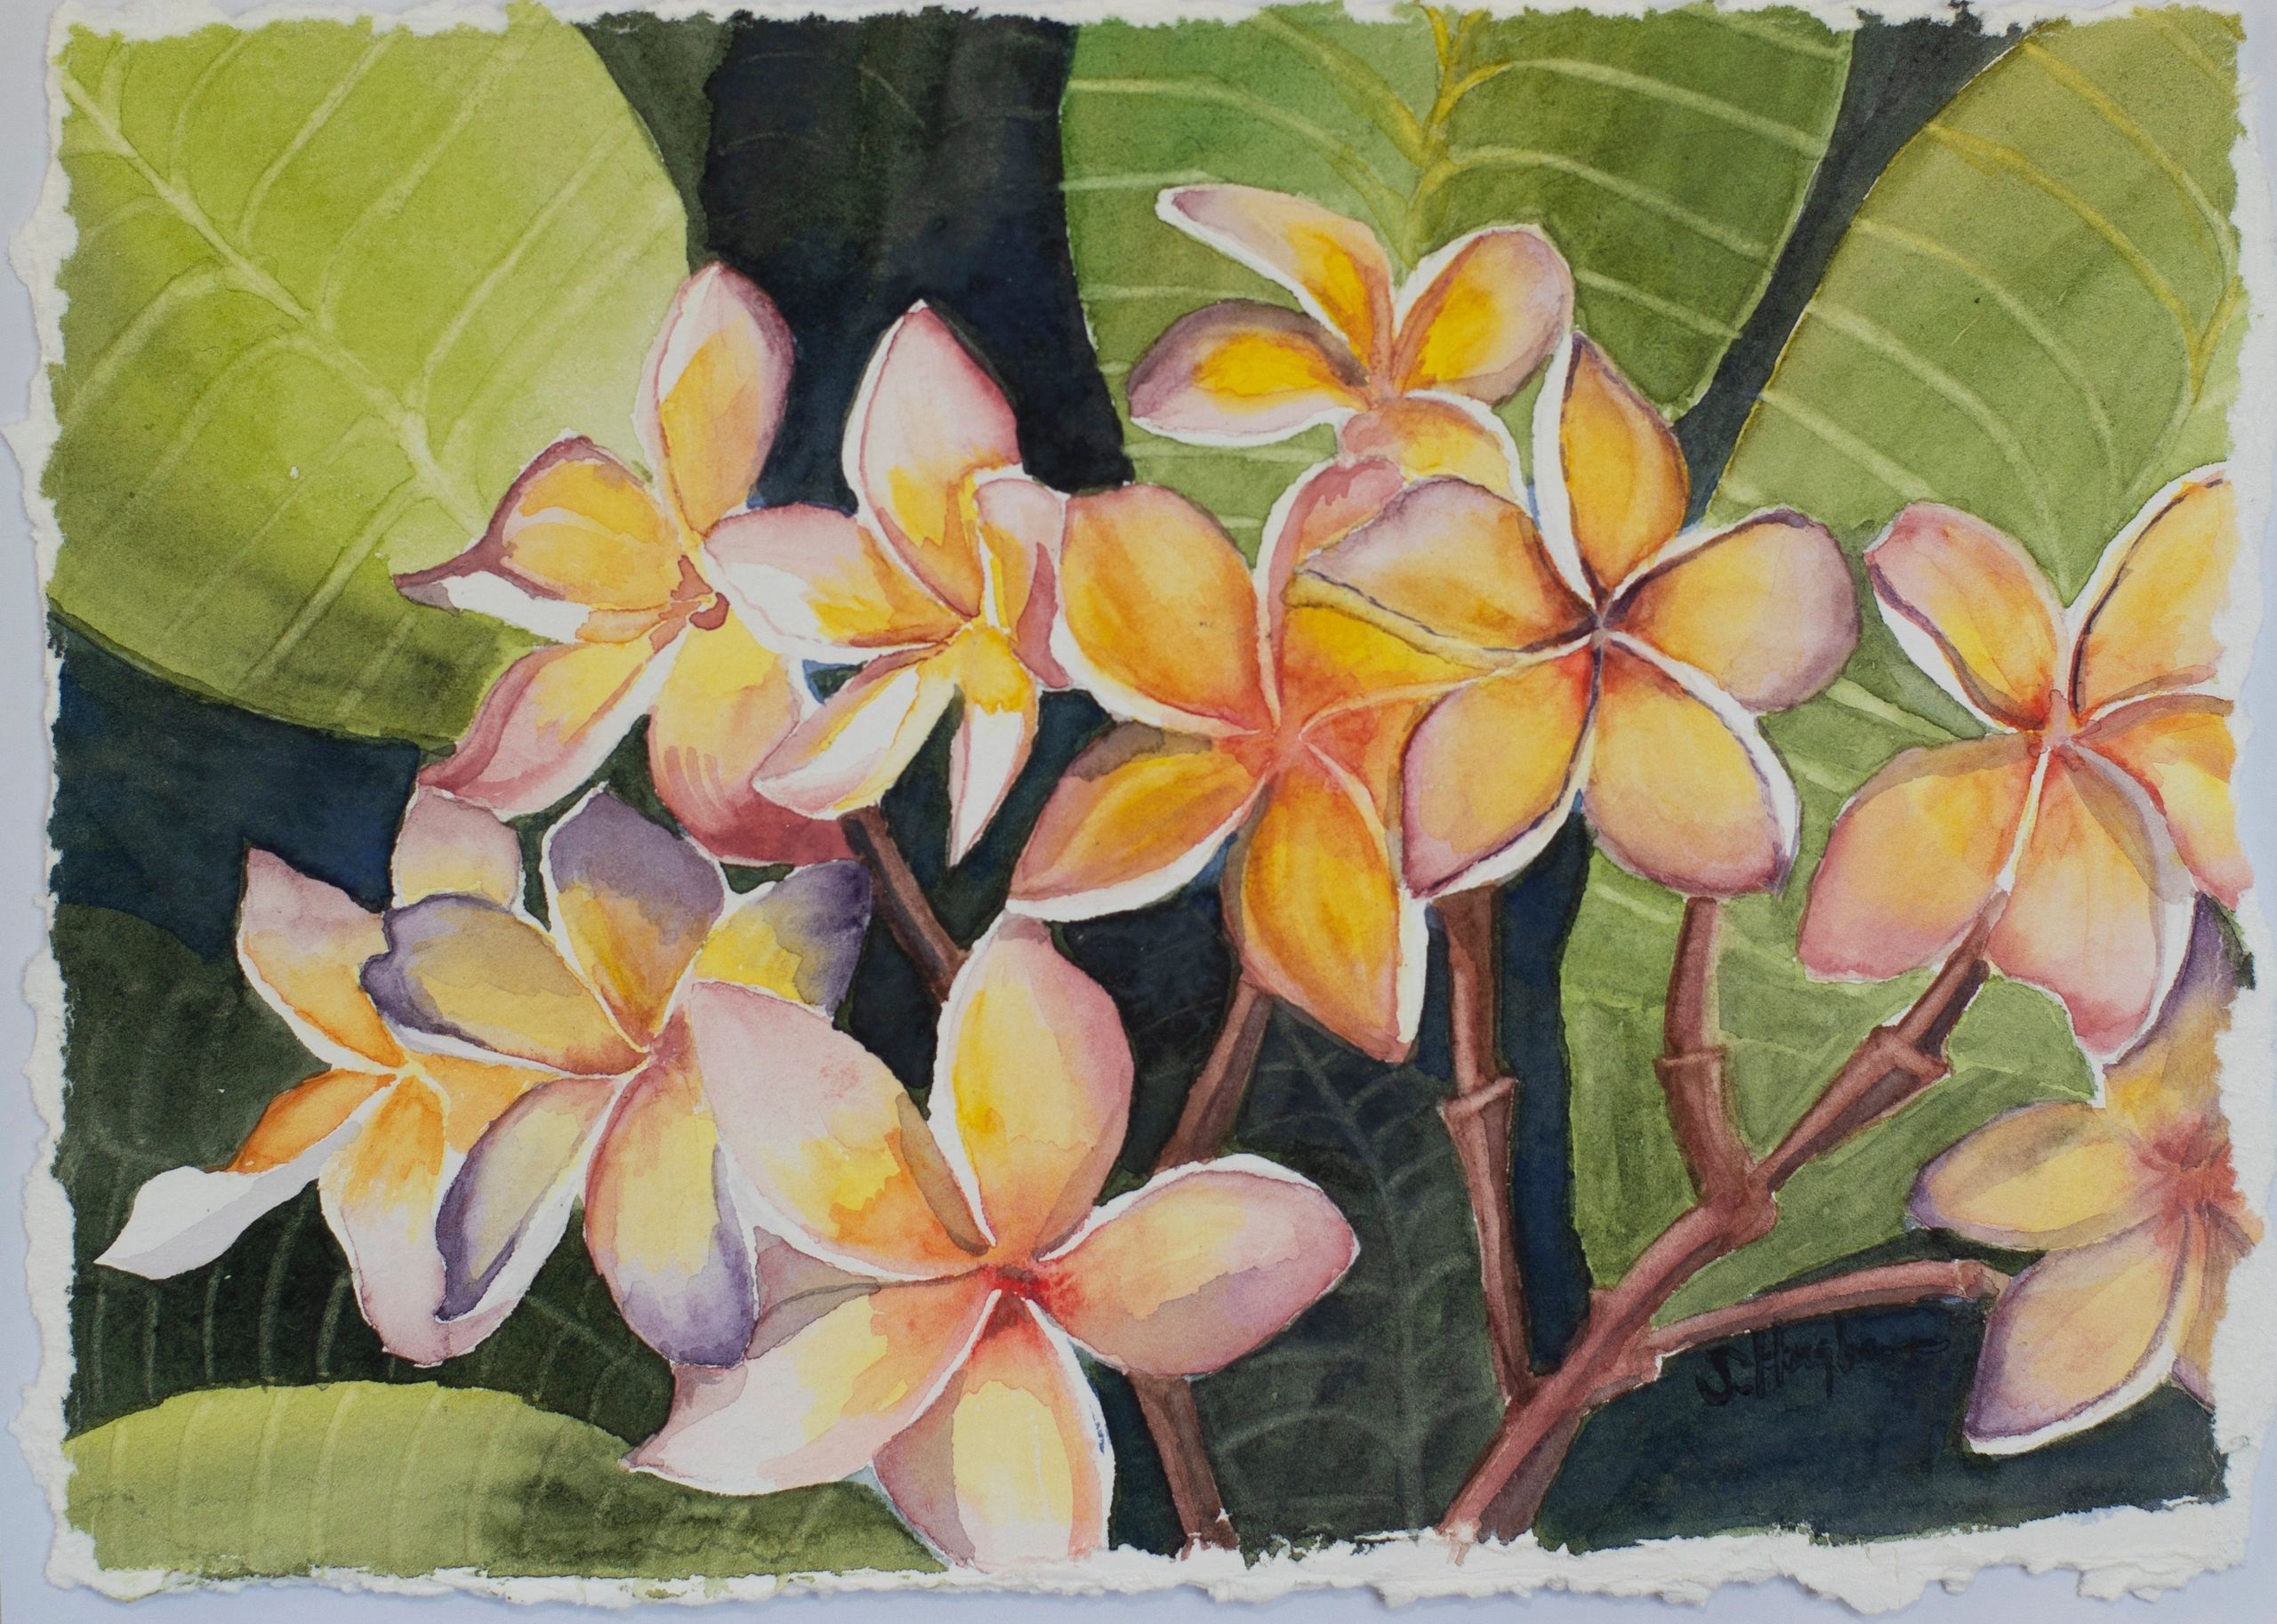 Small Maui Plumeria - Original watercolor on 8x10 hand torn watercolor paper.